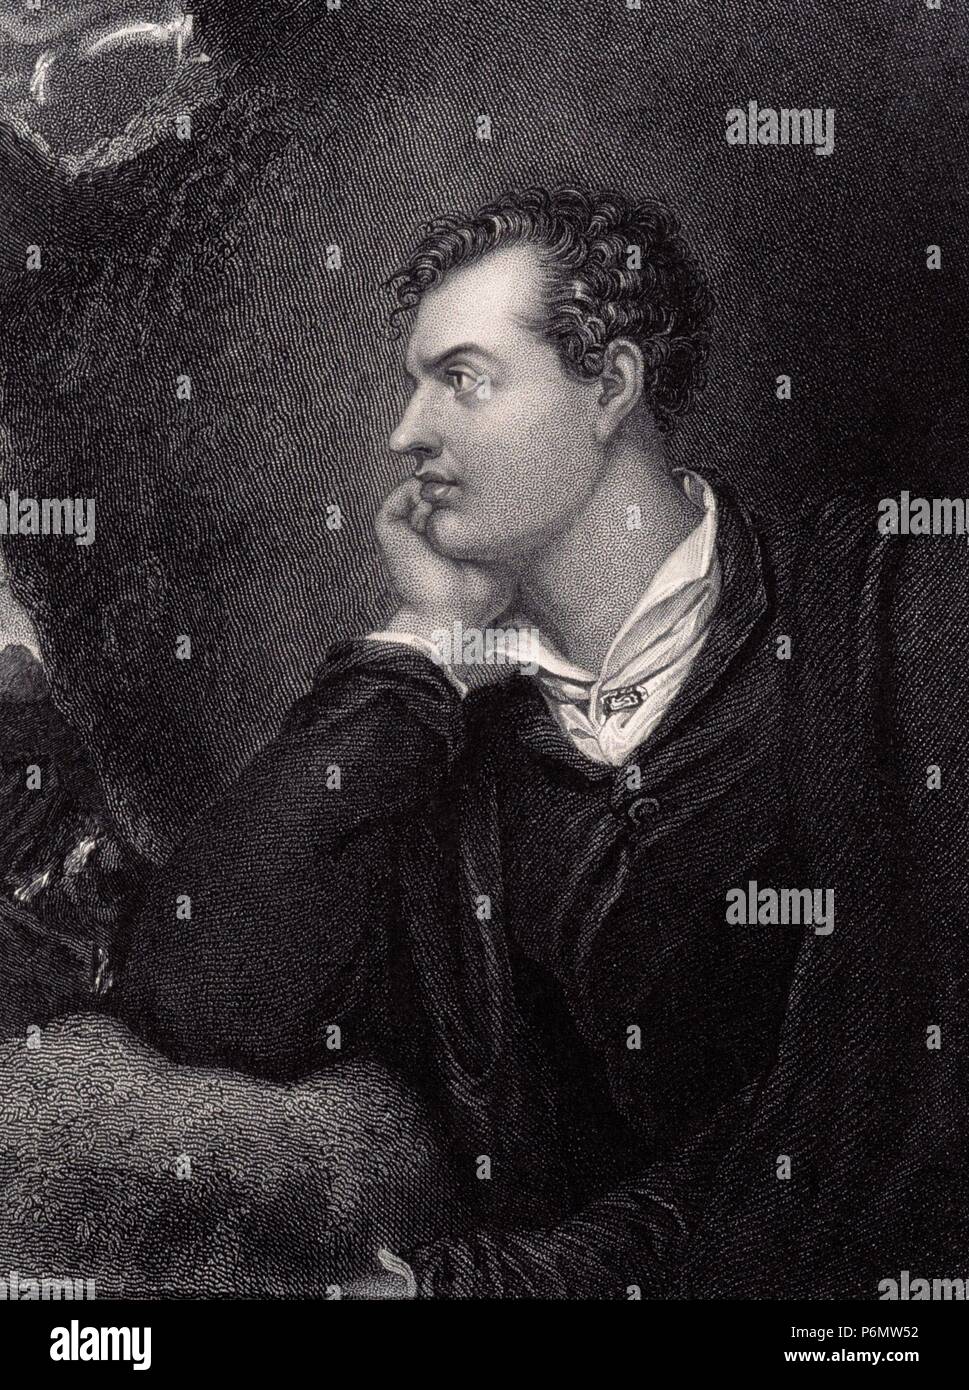 Lord George Noel Gordon Byron (1788-1824), von Hand unter dem Kinn. Englischer Dichter. Die Arbeiten umfassen die Don Juan, Childe Harold, Belagerung von Korinth, Mazeppa. Stockfoto